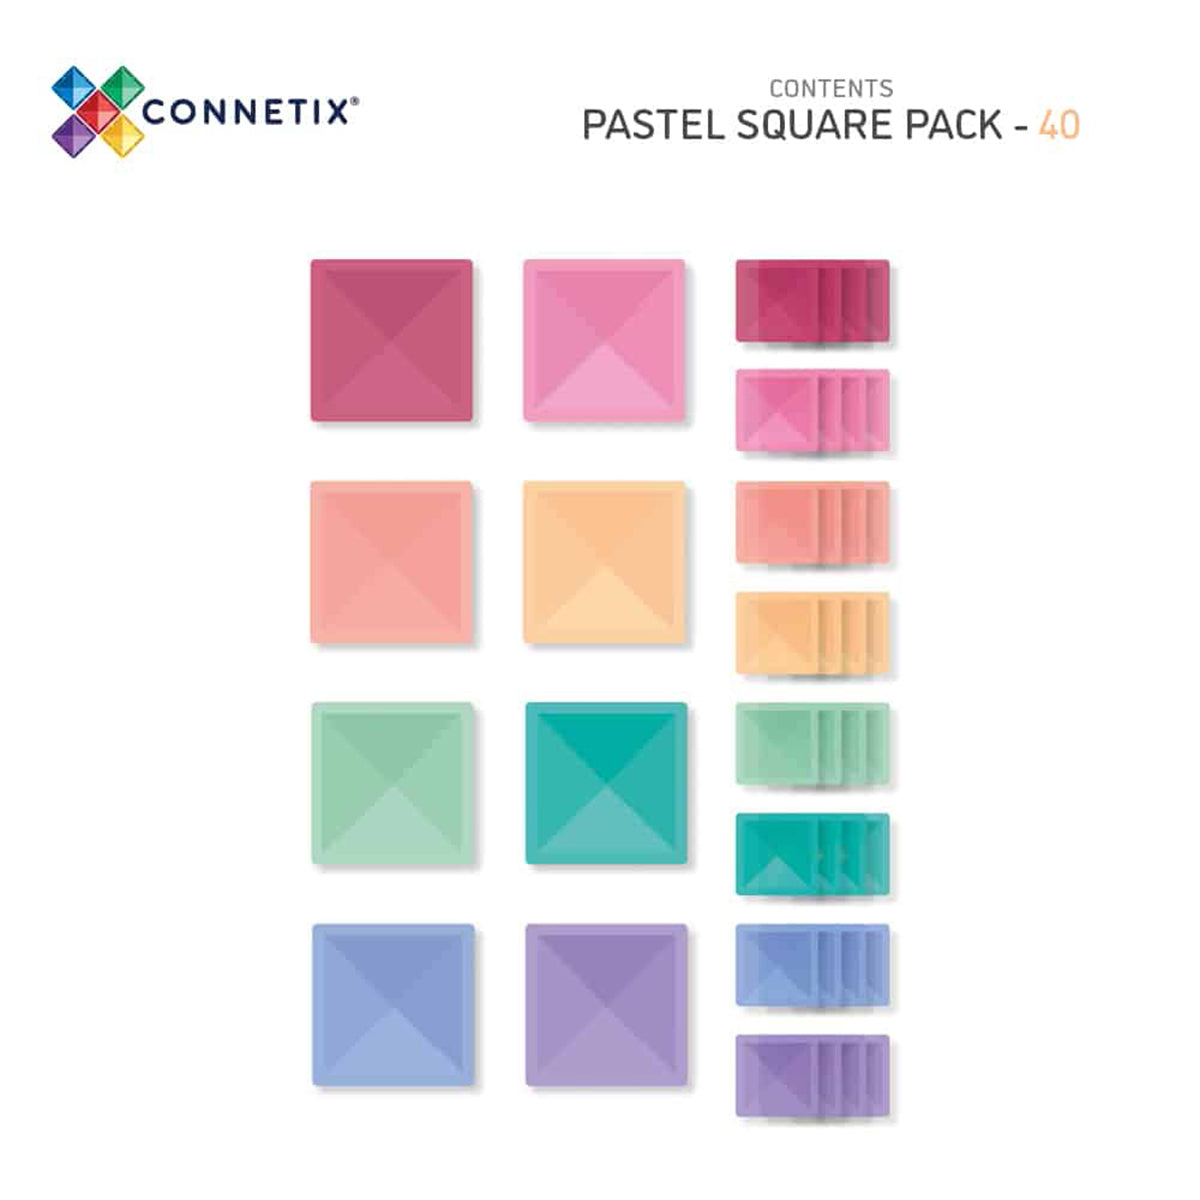 Breid je Connetix collectie uit met deze pastel square pack 40 stuks. Deze set bevat zowel grote als standaard vierkanten in elke pastelkleur, waarmee je kindje extra coole bouwwerken kan maken. VanZus